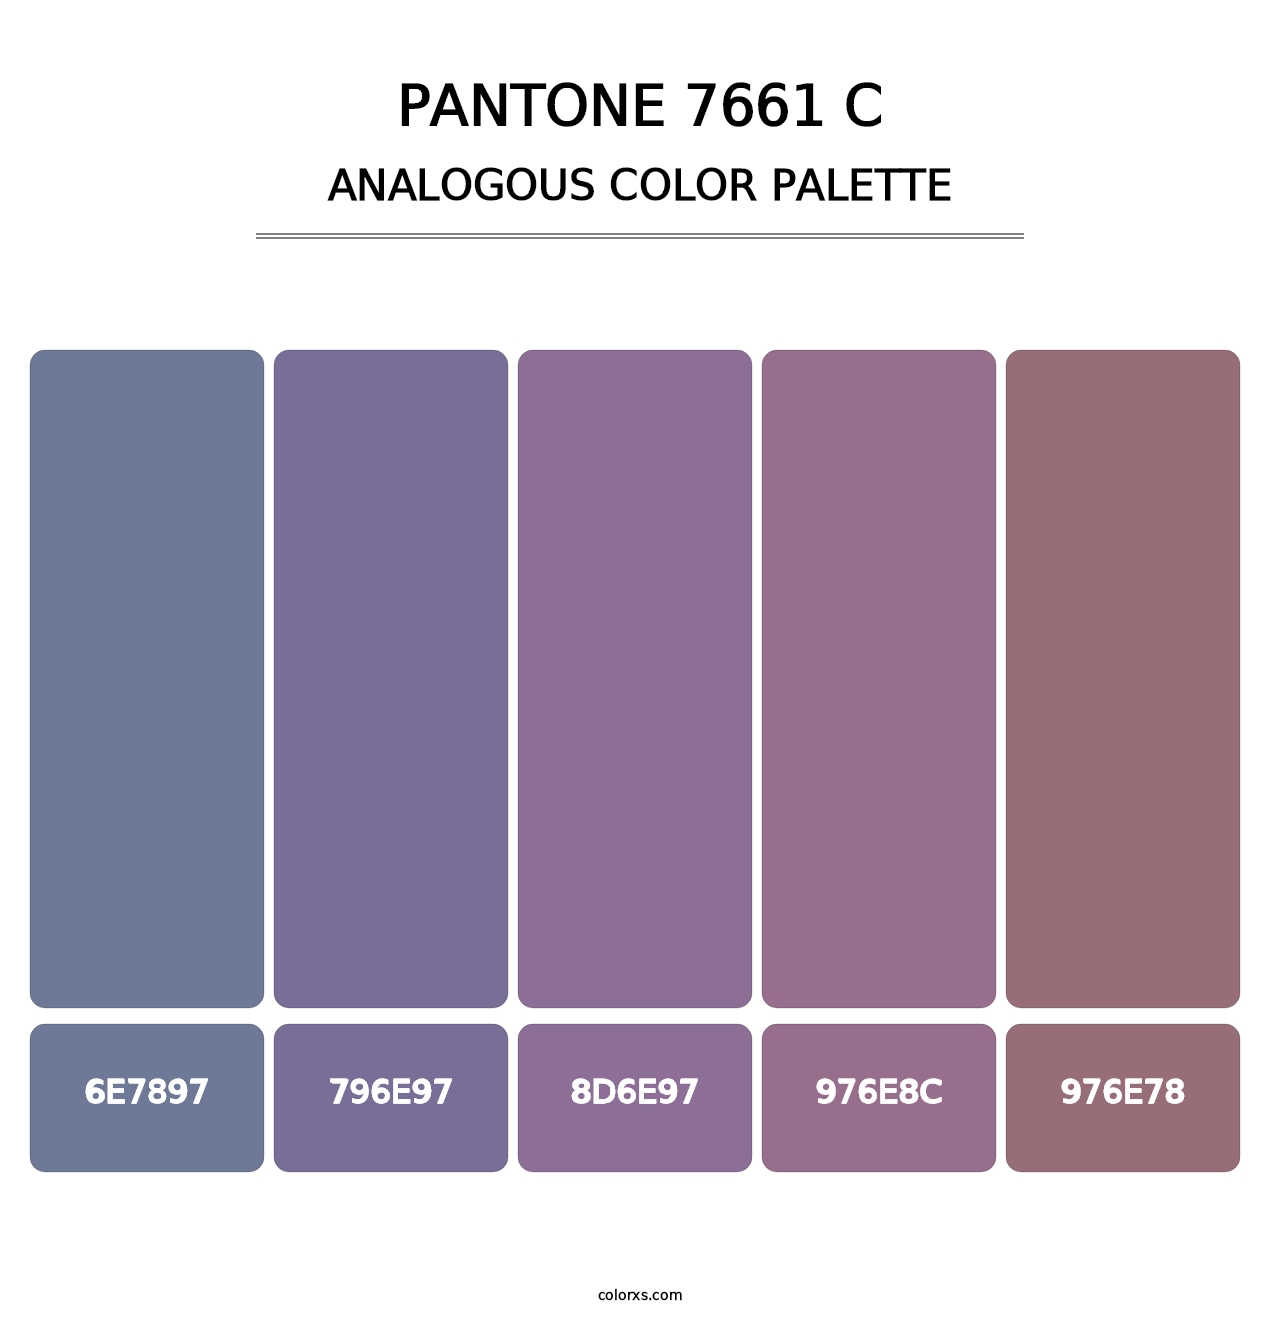 PANTONE 7661 C - Analogous Color Palette